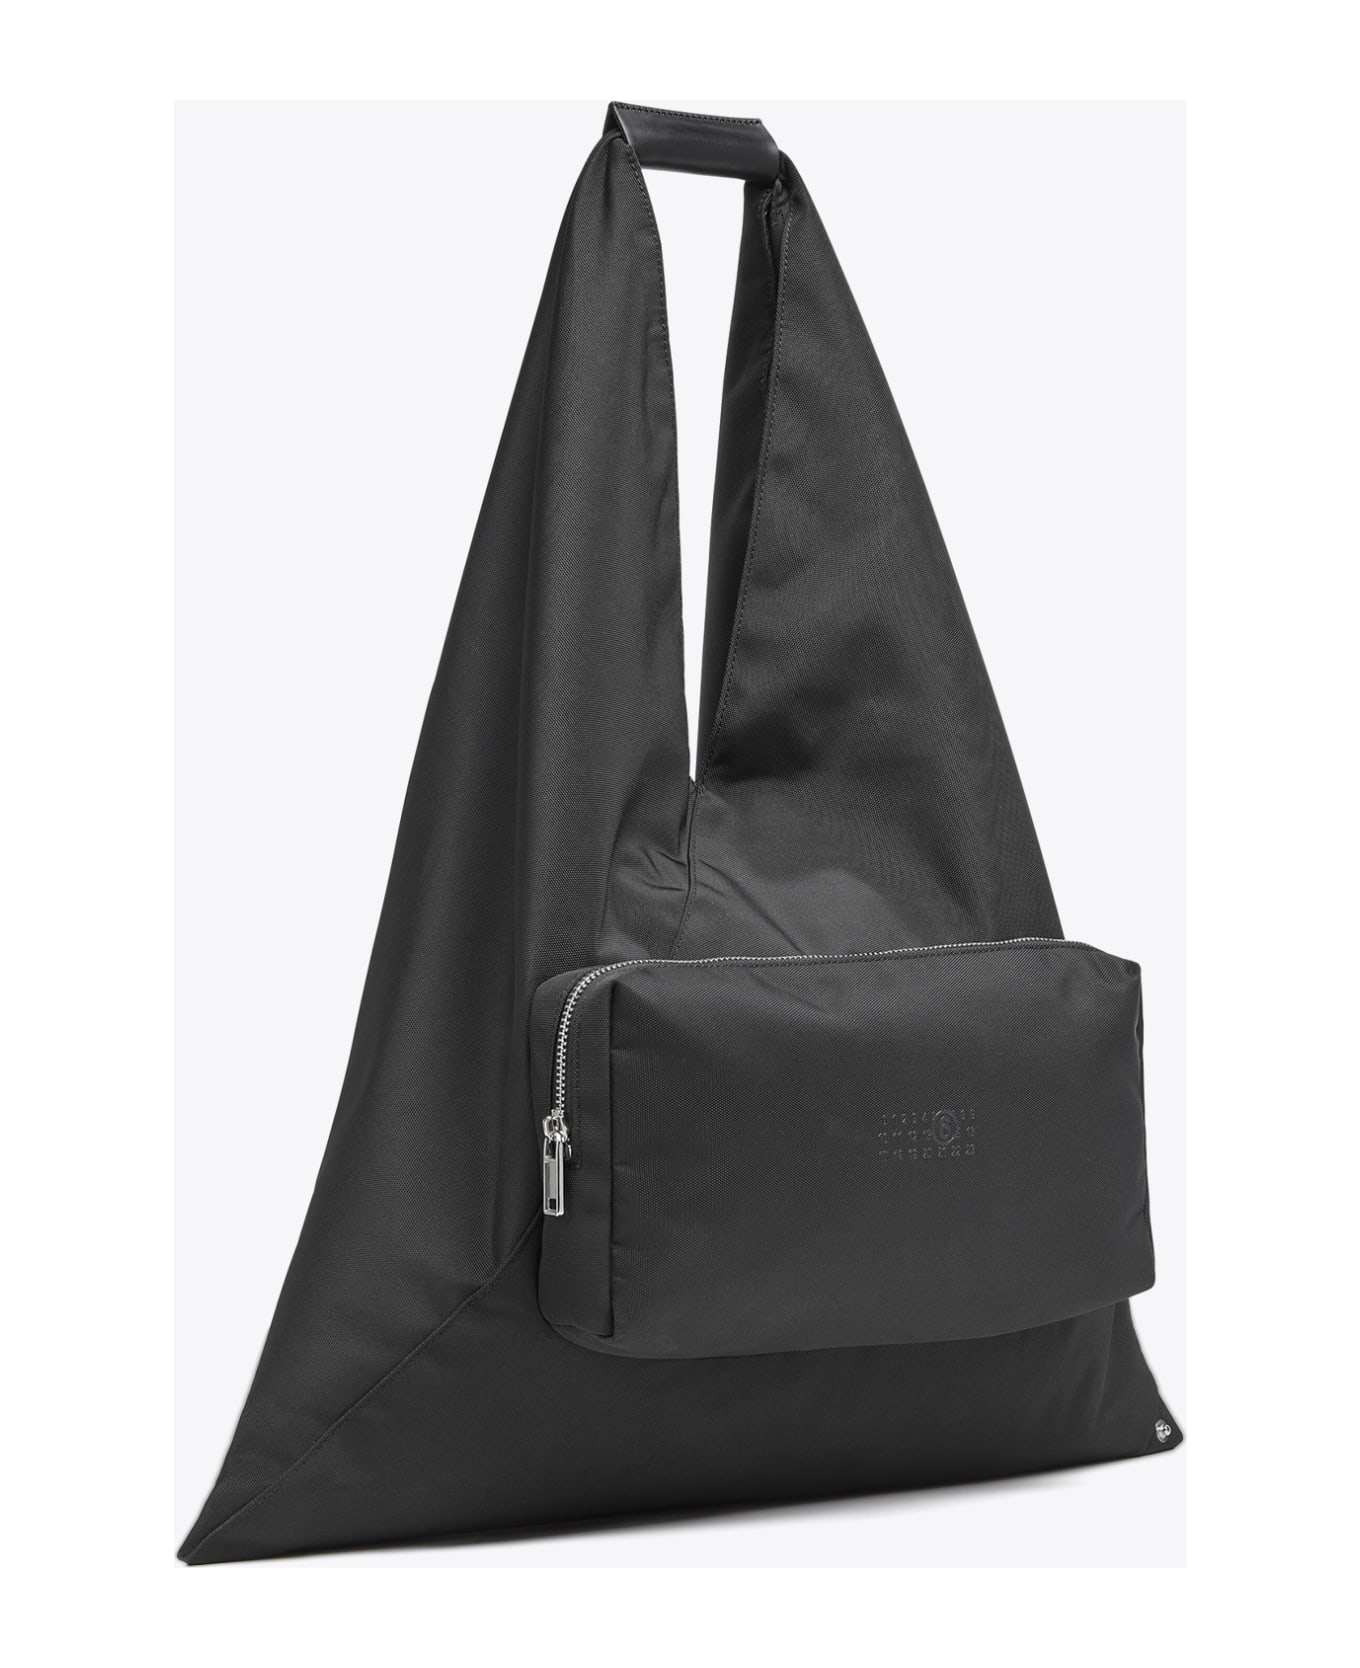 MM6 Maison Margiela Borsa Mano Black nylon Japanese bag with front pocket - Nero